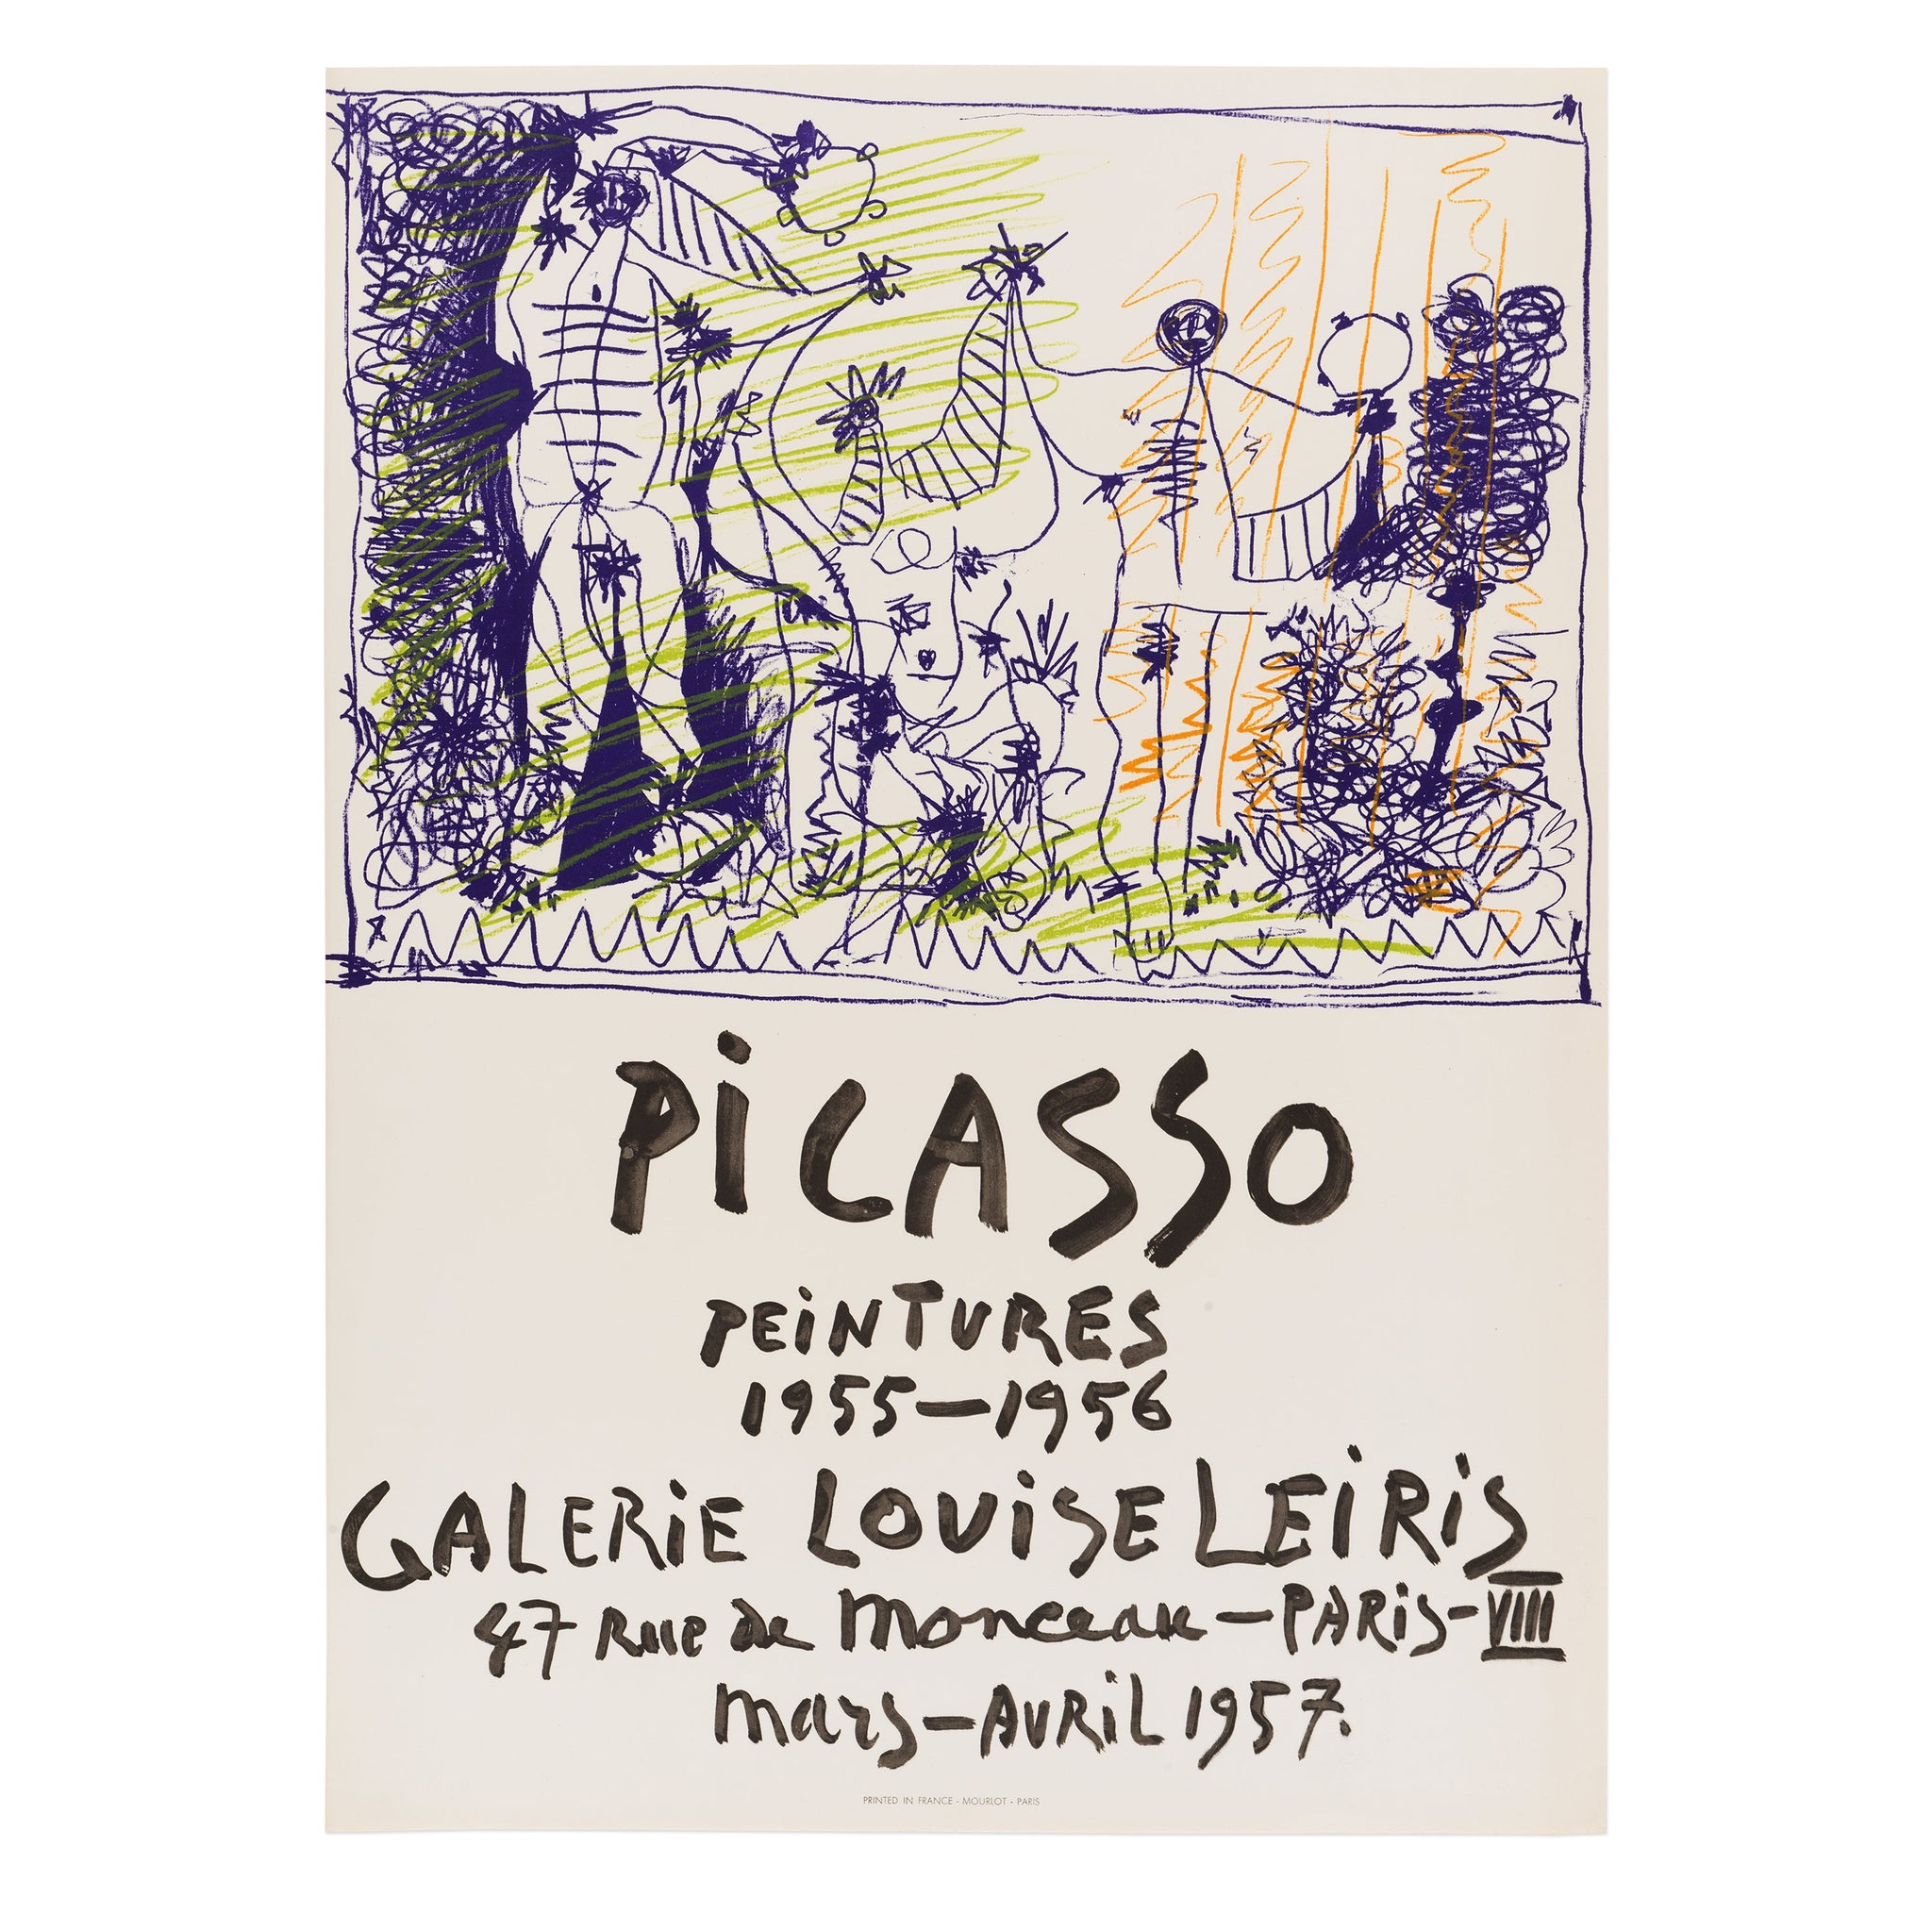 Pablo Picasso: Peintures 1955–1956 rare poster